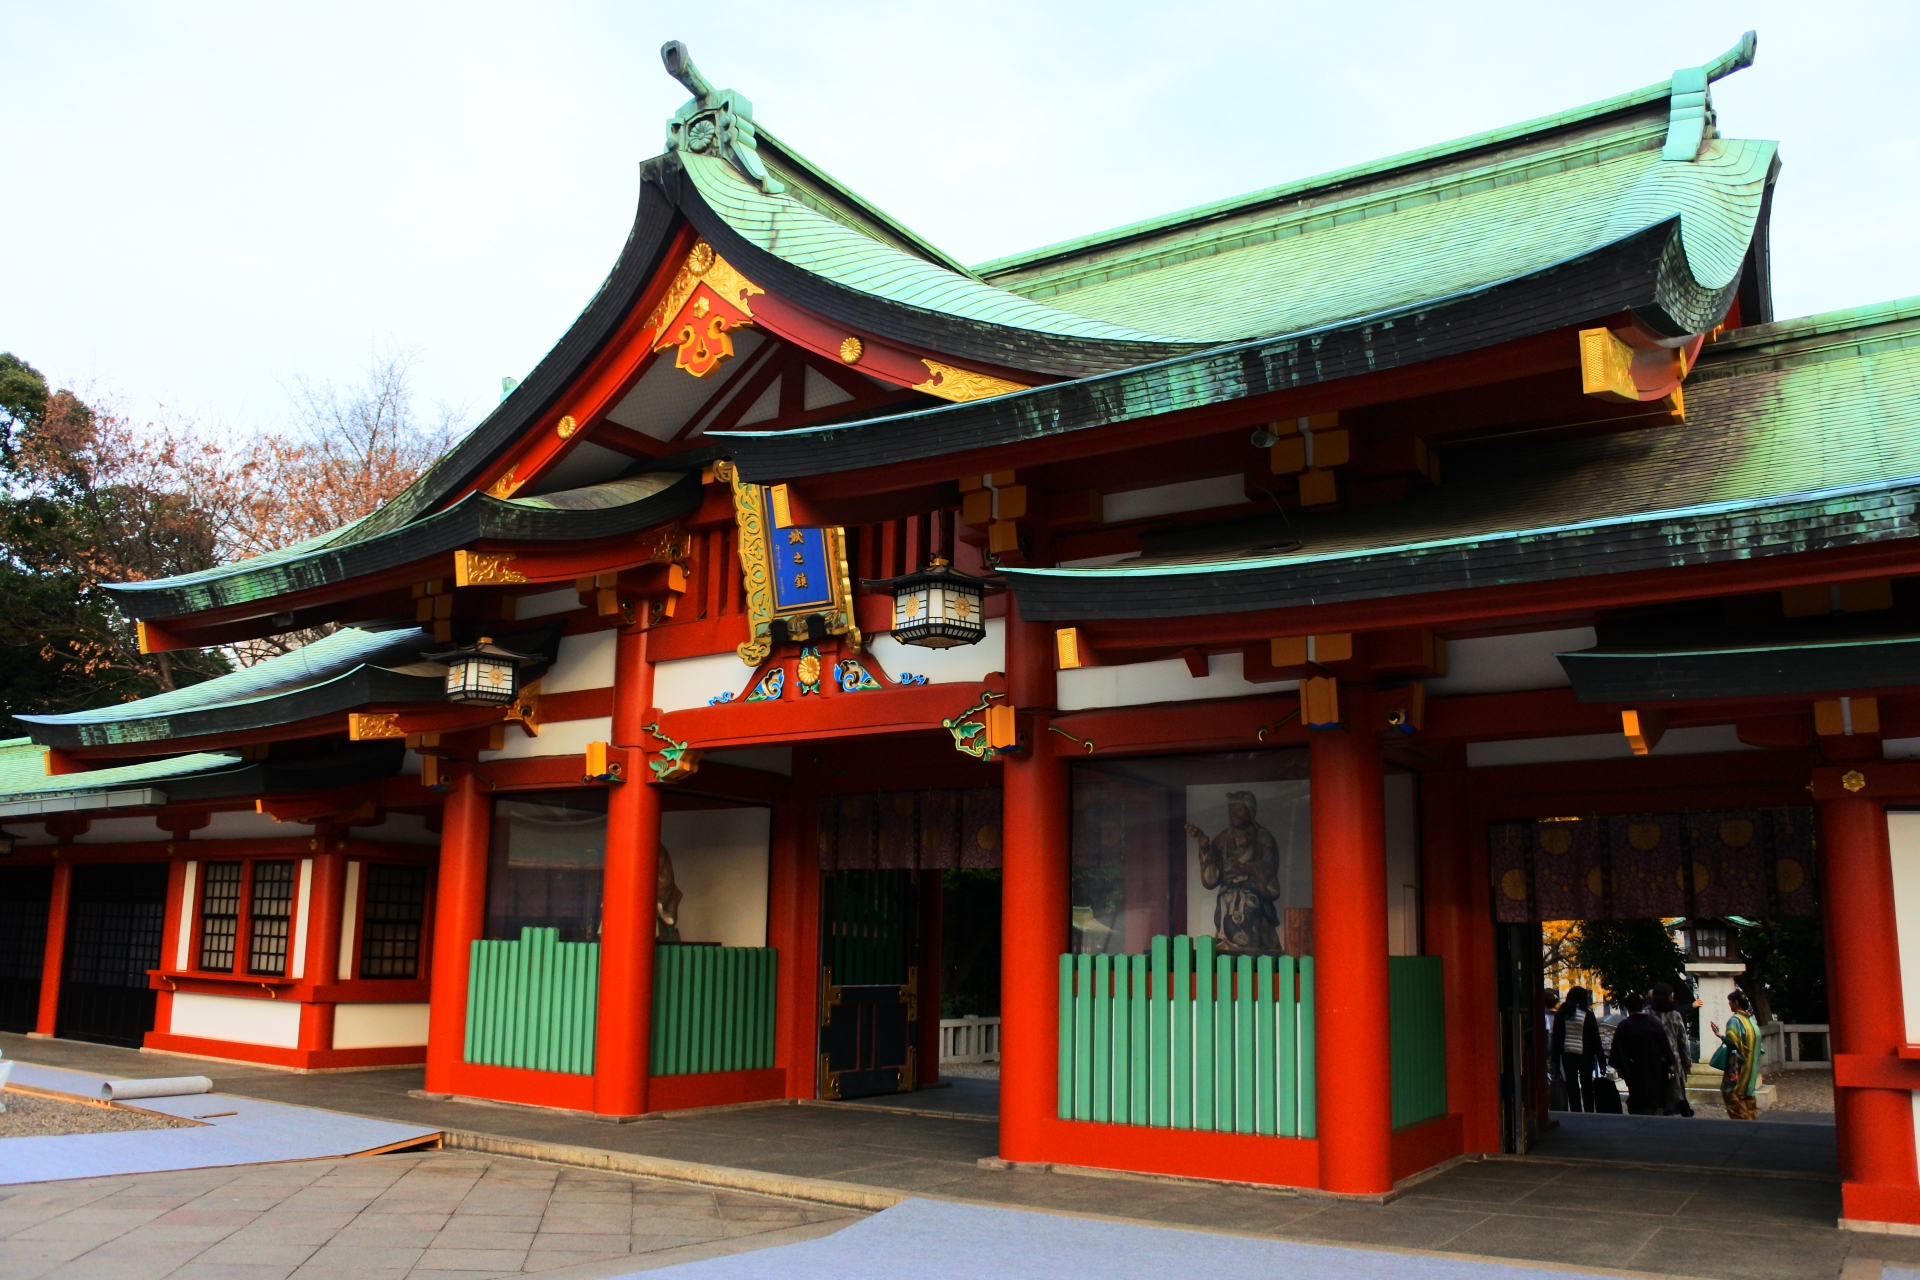 厄除けなら東京で 最強の寺社やおすすめの人気有名神社等をご紹介 Travelnote トラベルノート